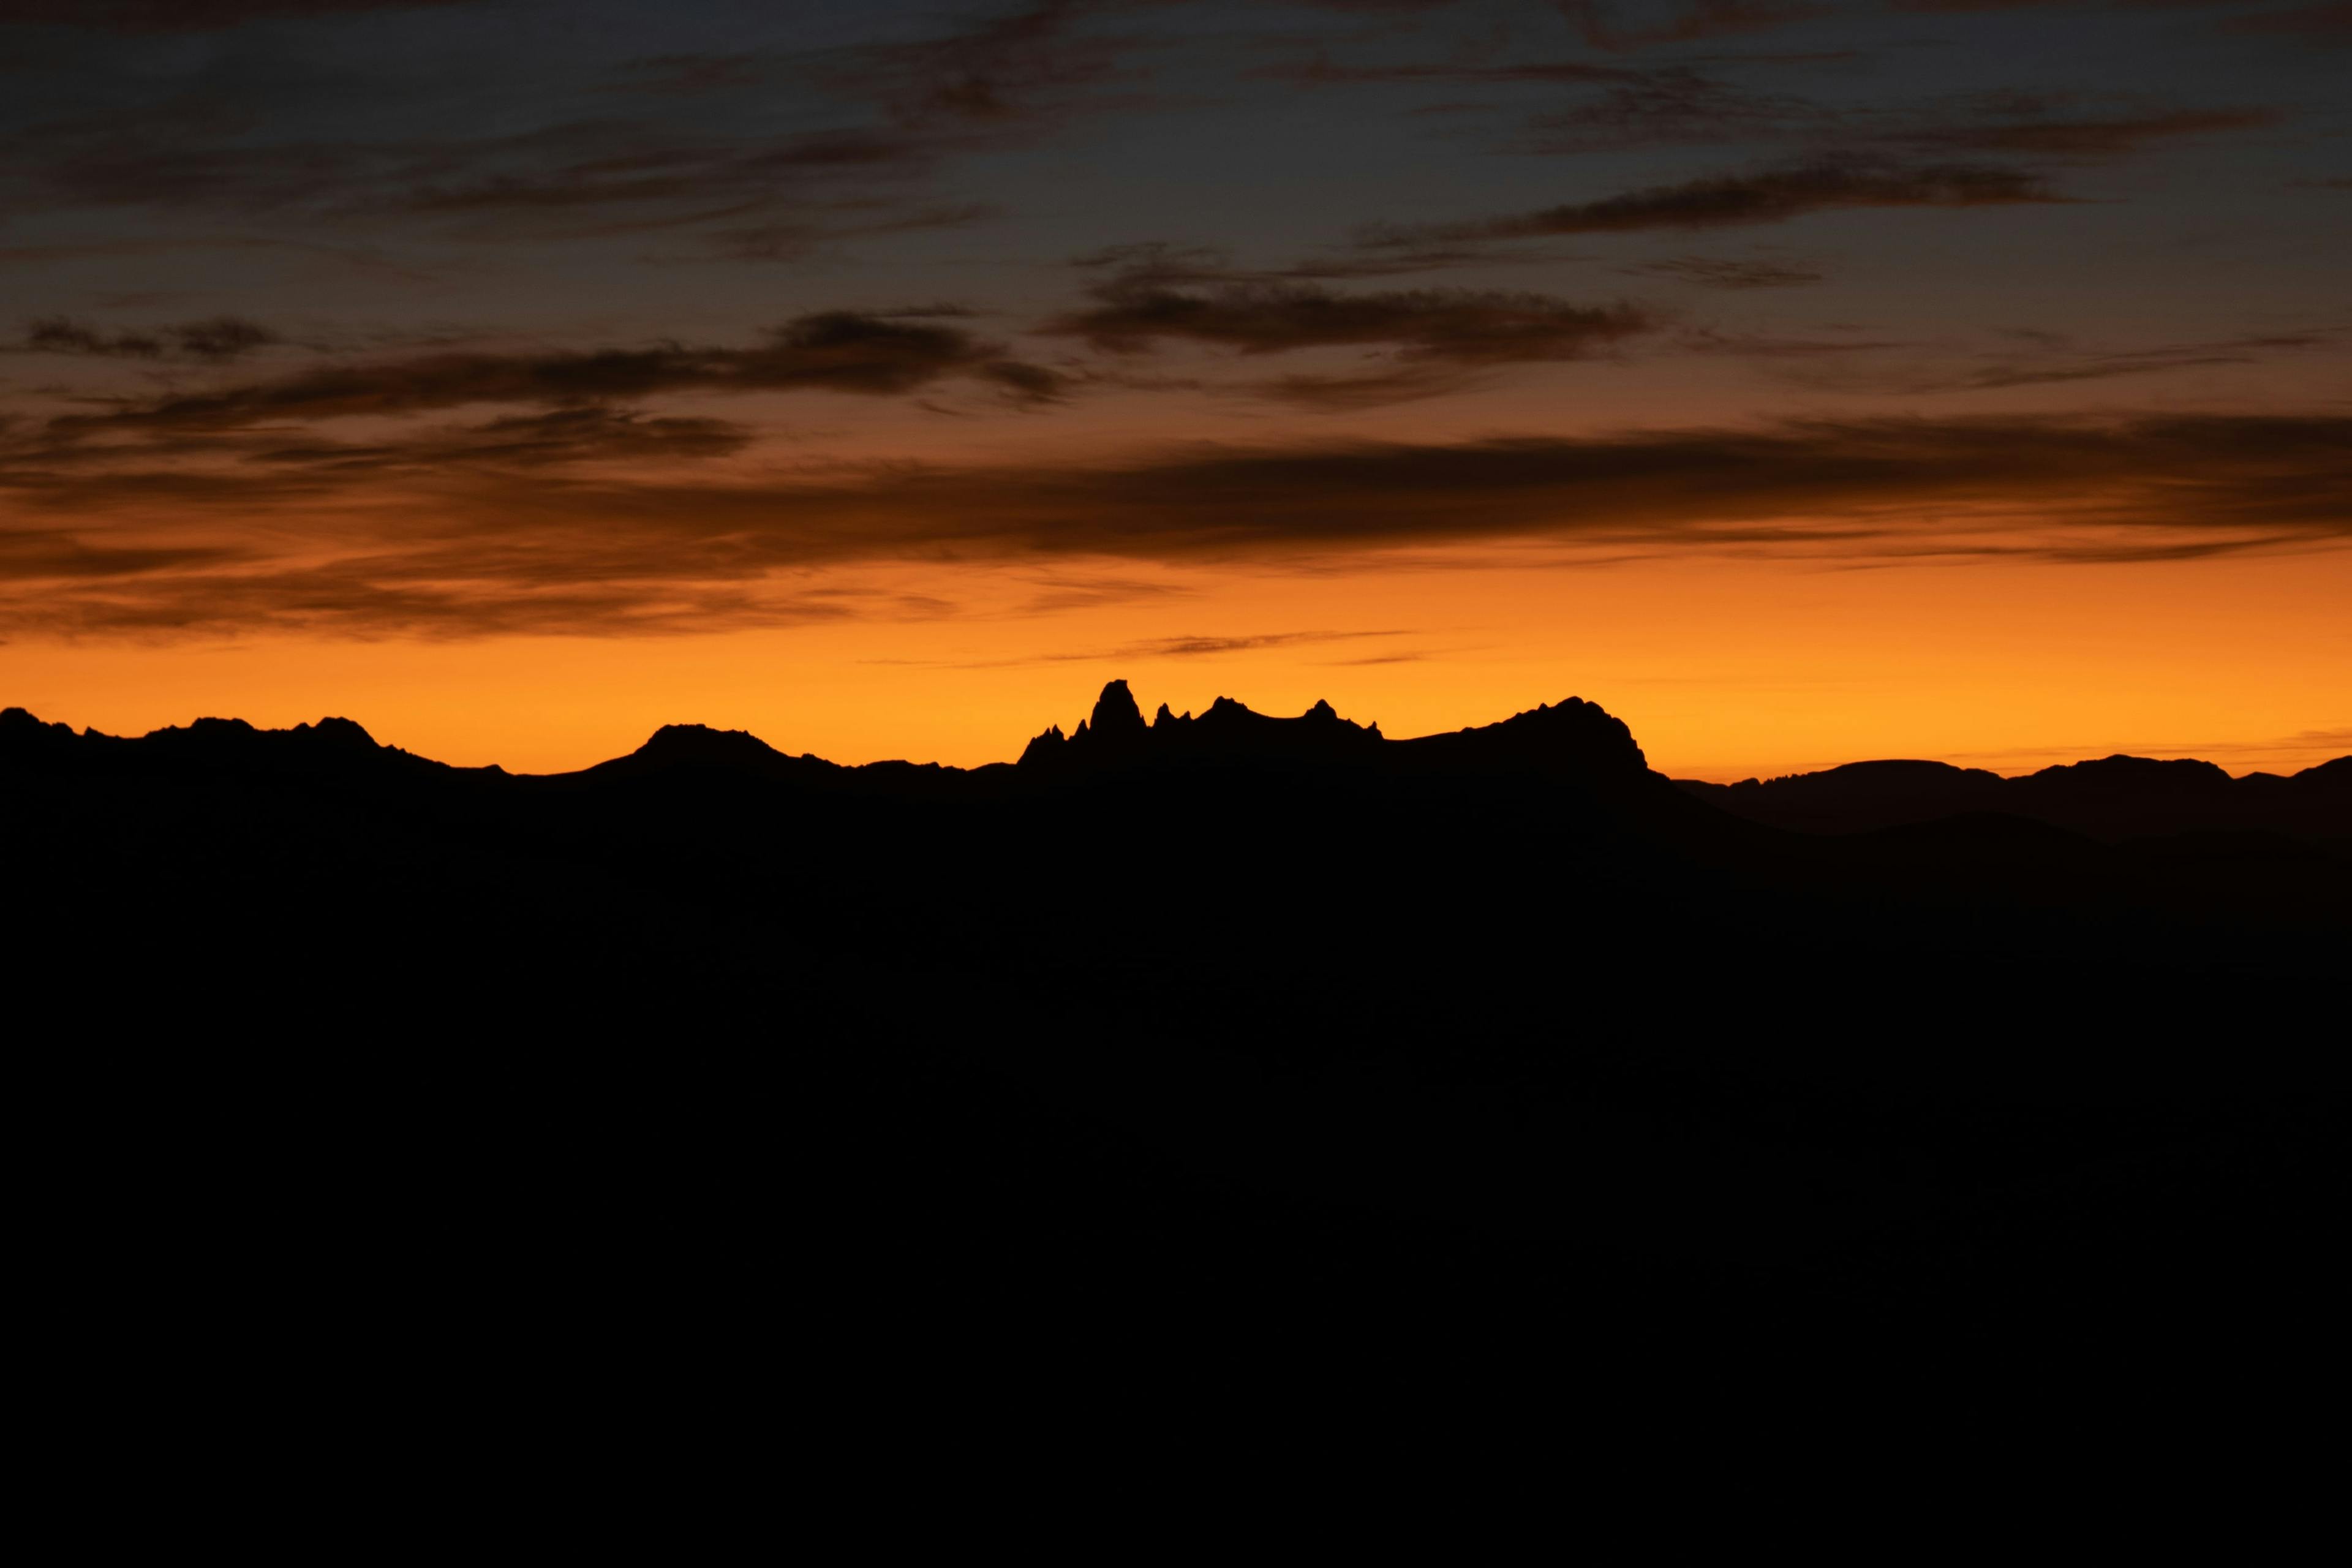 Sunrise overlooking Federation Peak. The distinct hook of the peak makes it unmistakable. 